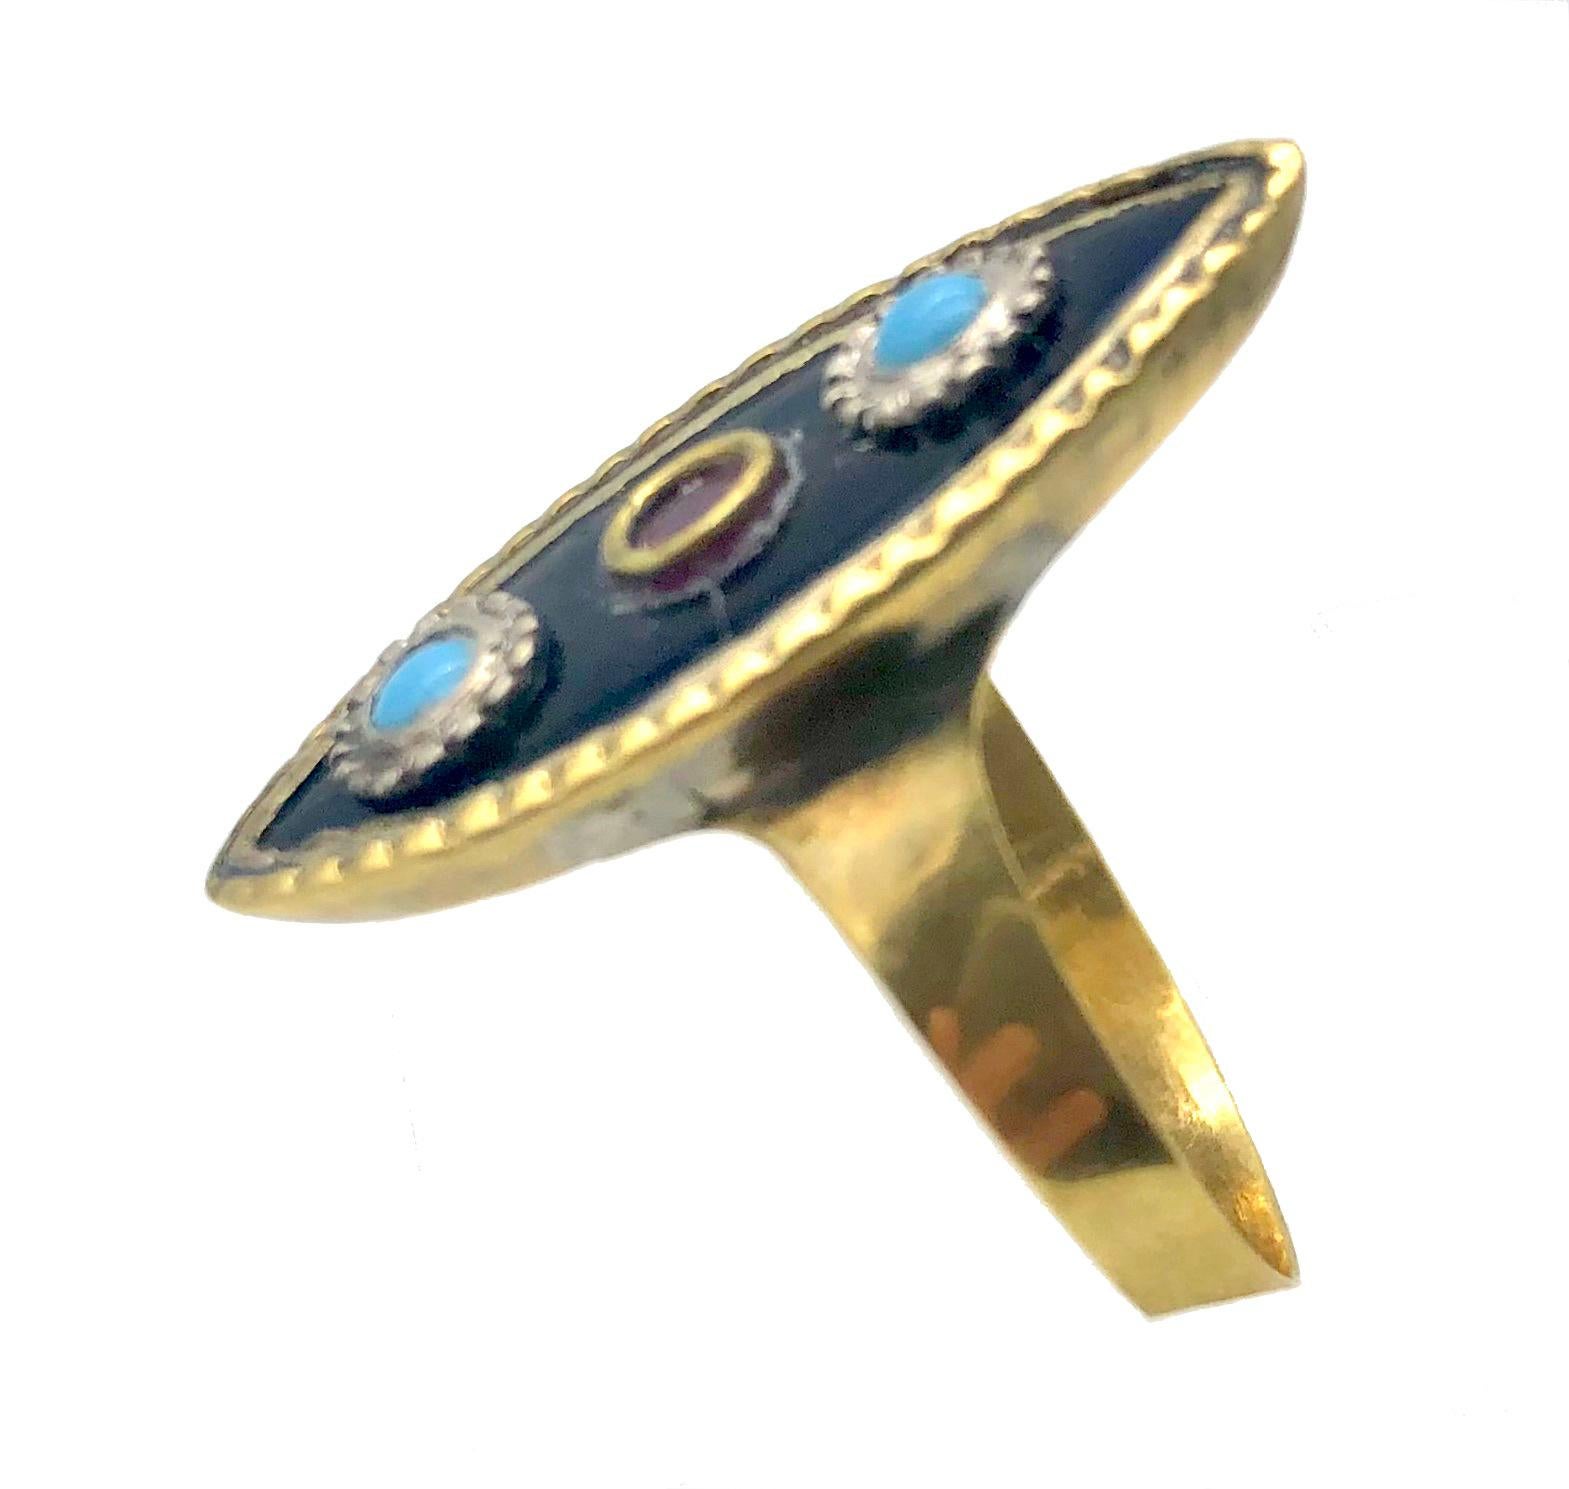 Ce modèle inhabituel en forme de navette  La bague Empire en or 10 carats a été fabriquée à la main vers 1800. Elle est sertie de deux cabochons de tuequoise et d'une pierre en pâte rouge. 
La tête de l'anneau mesure 2,8 x 1,2 cm. 